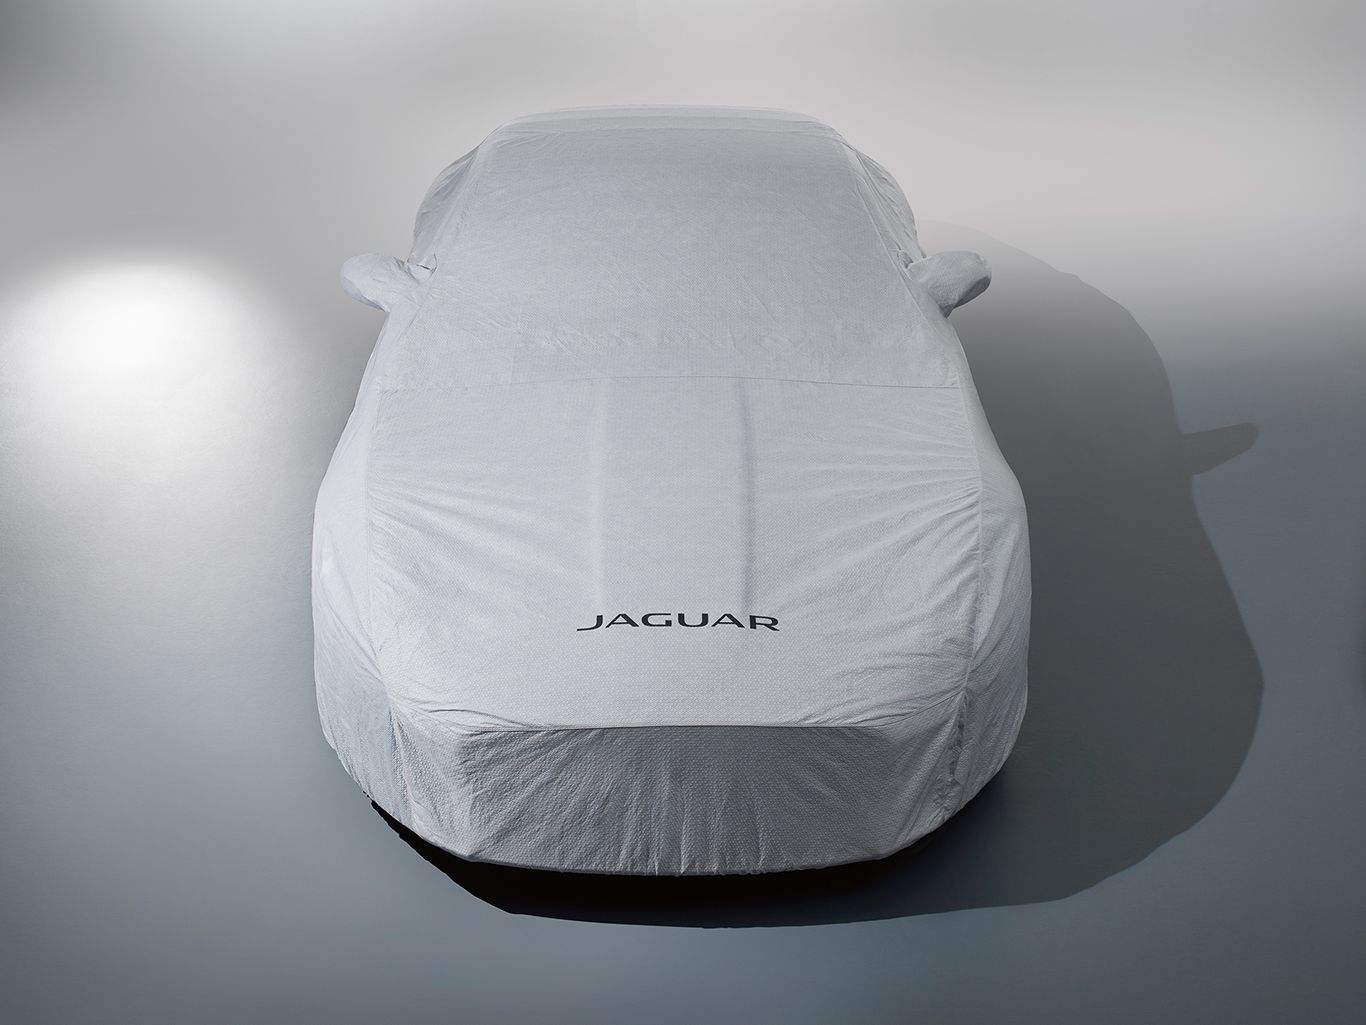 Jaguar F-Type Original Car Cover